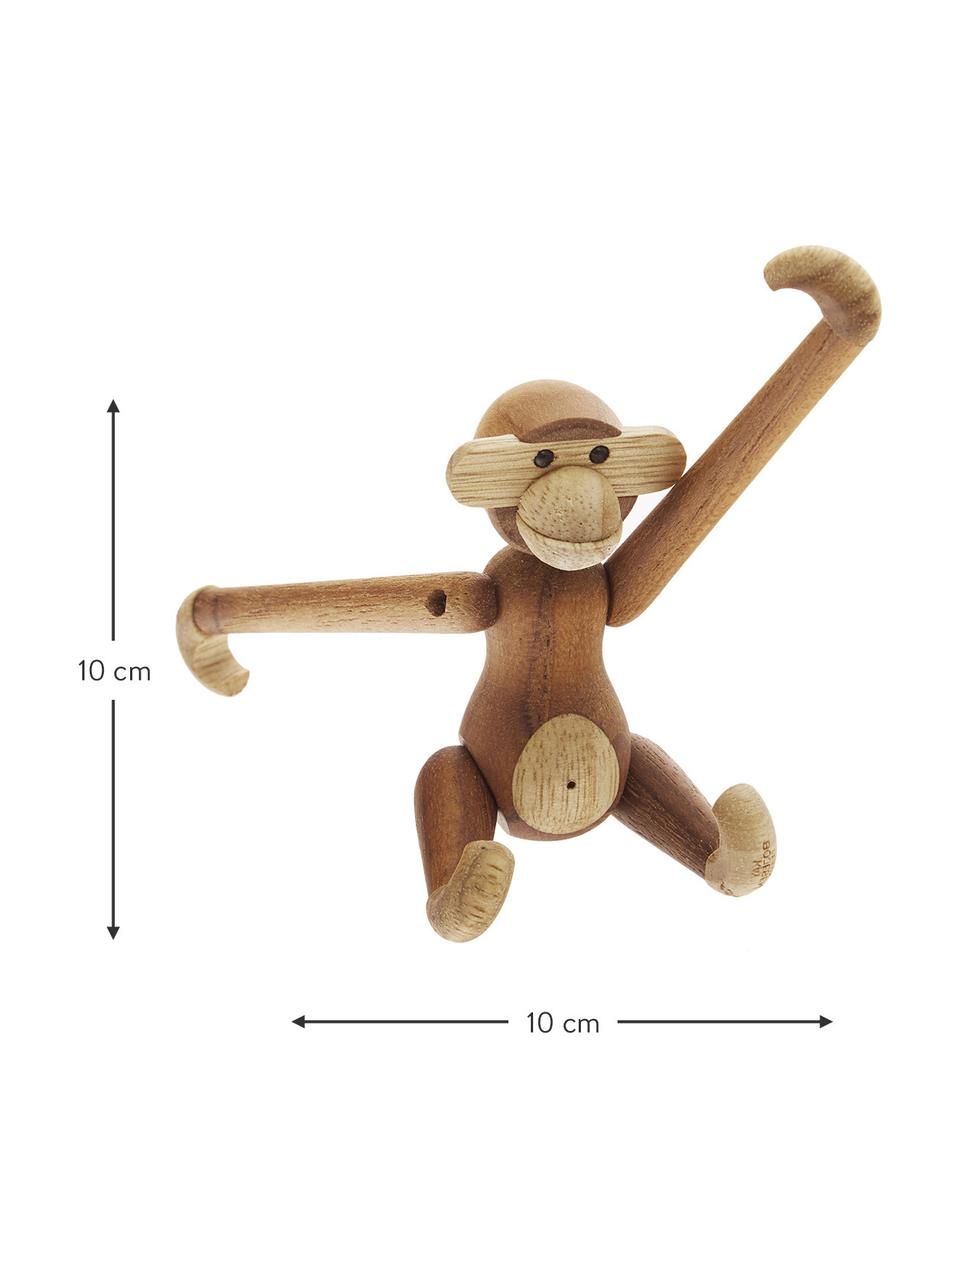 Designer-Deko-Objekt Monkey, Teakholz, Teakholz, Limbaholz, lackiert, Helles Holz, Dunkles Holz, B 10 x H 10 cm